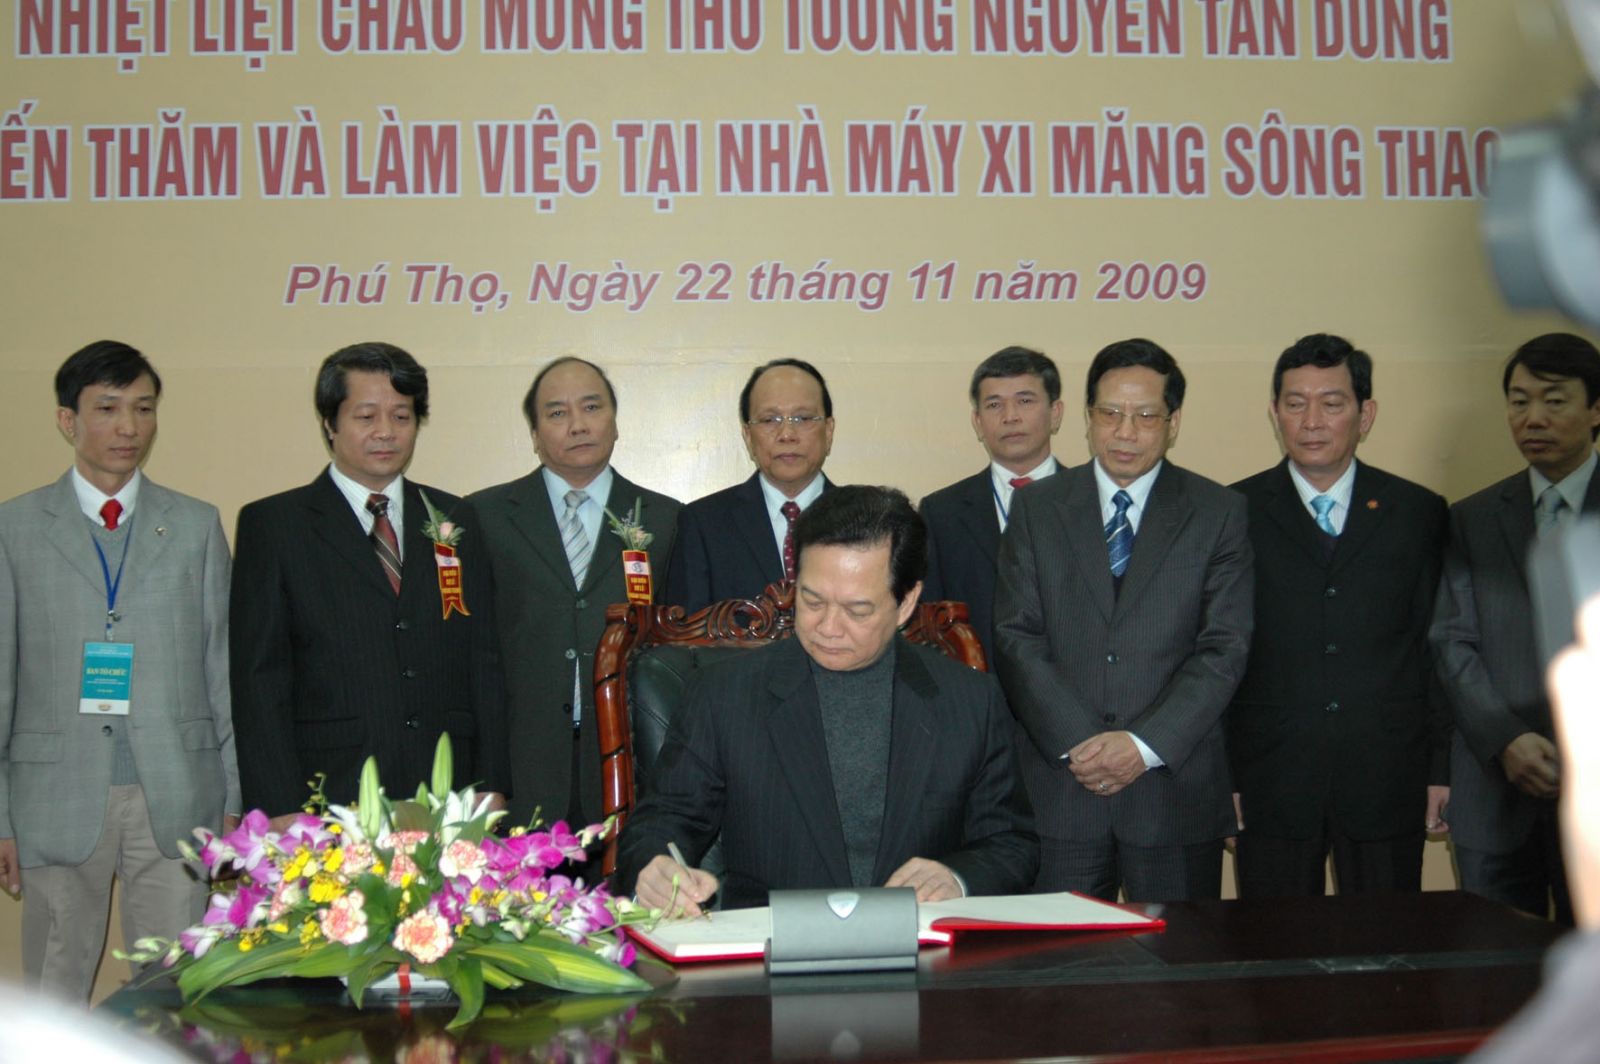 Thủ tướng Chính phủ Nguyễn Tấn Dũng để lại lưu bút khi đến thăm và làm việc tại Nhà máy Xi măng Sông Thao